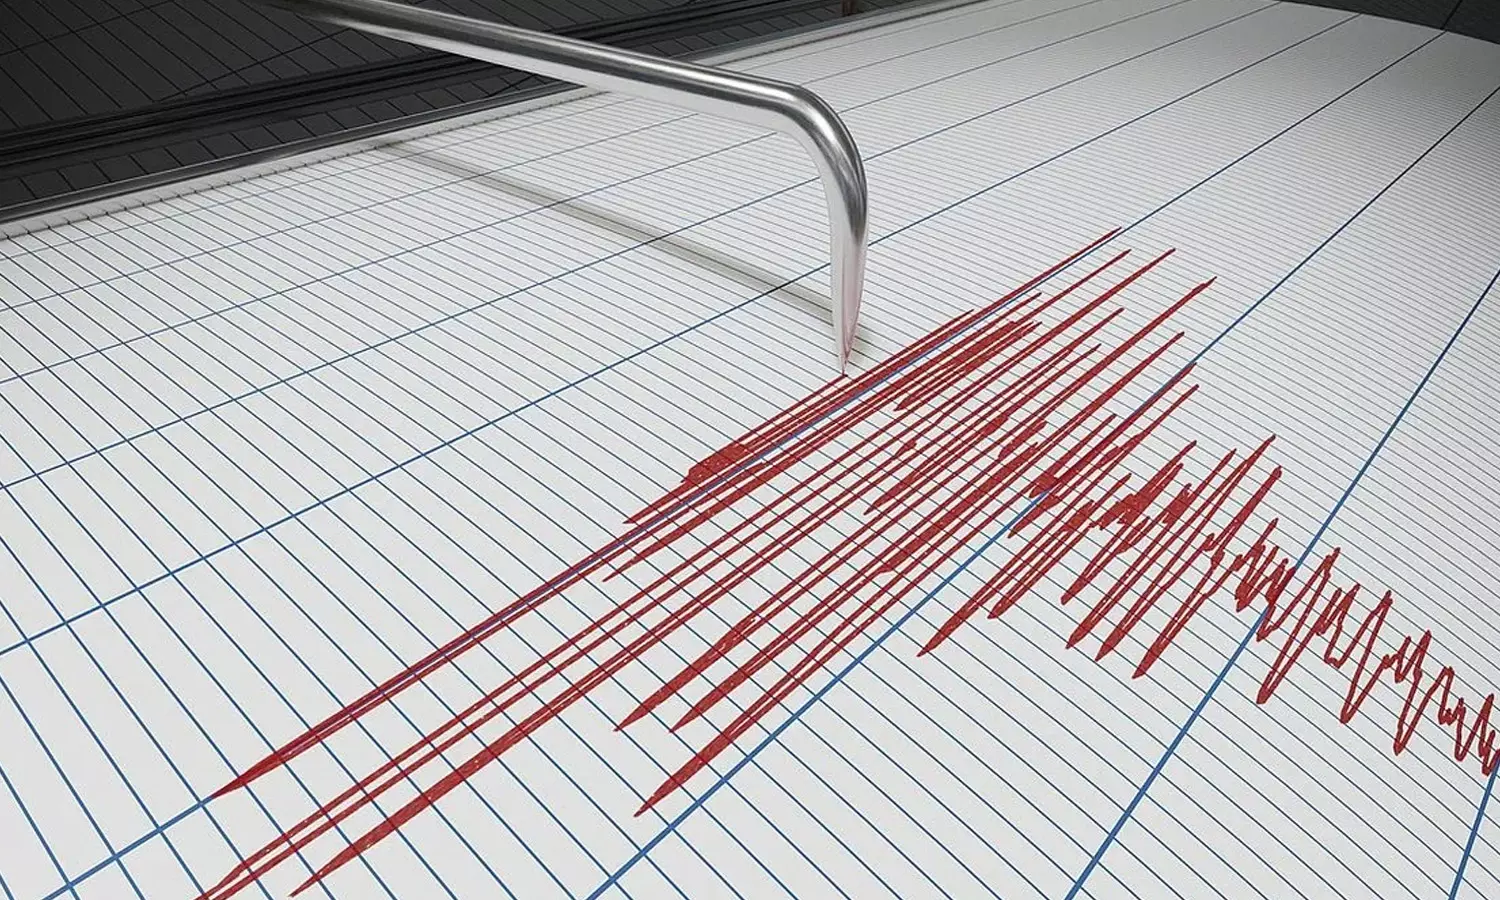 Gempa kuat kembali melanda Indonesia: tercatat berkekuatan 6,2 SR